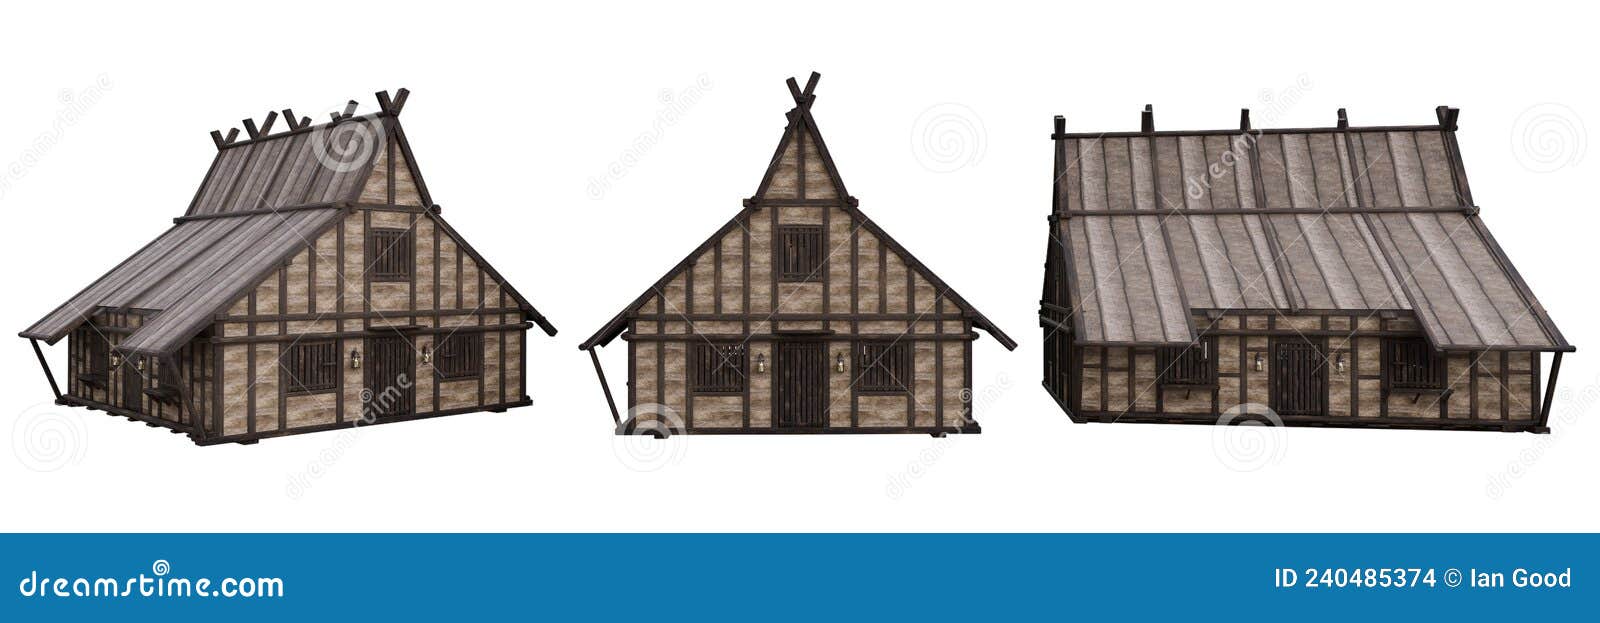 Casa medieval isolada em fundo transparente